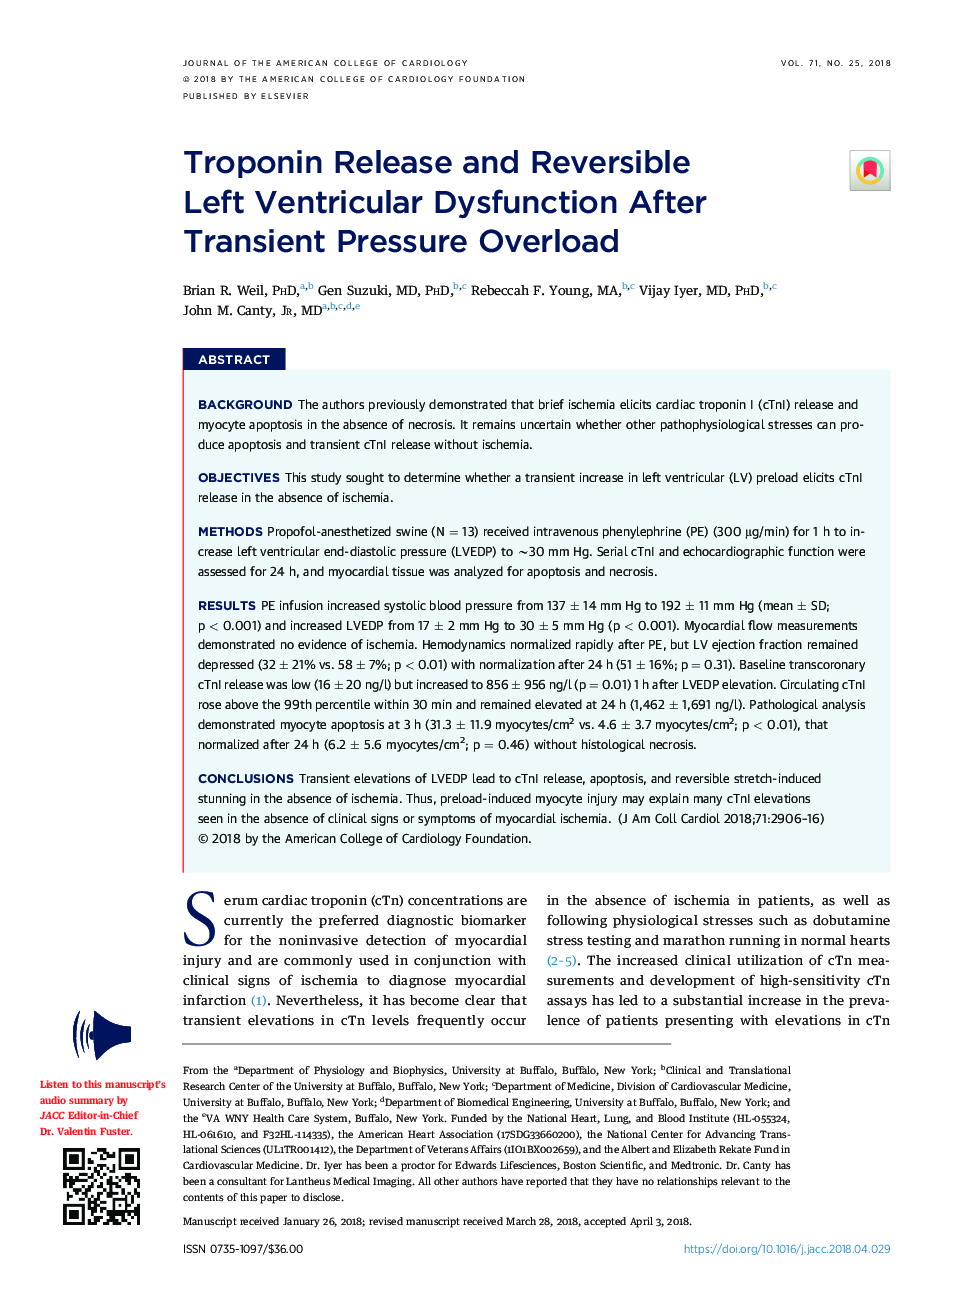 Troponin Release and Reversible LeftÂ Ventricular Dysfunction After Transient PressureÂ Overload